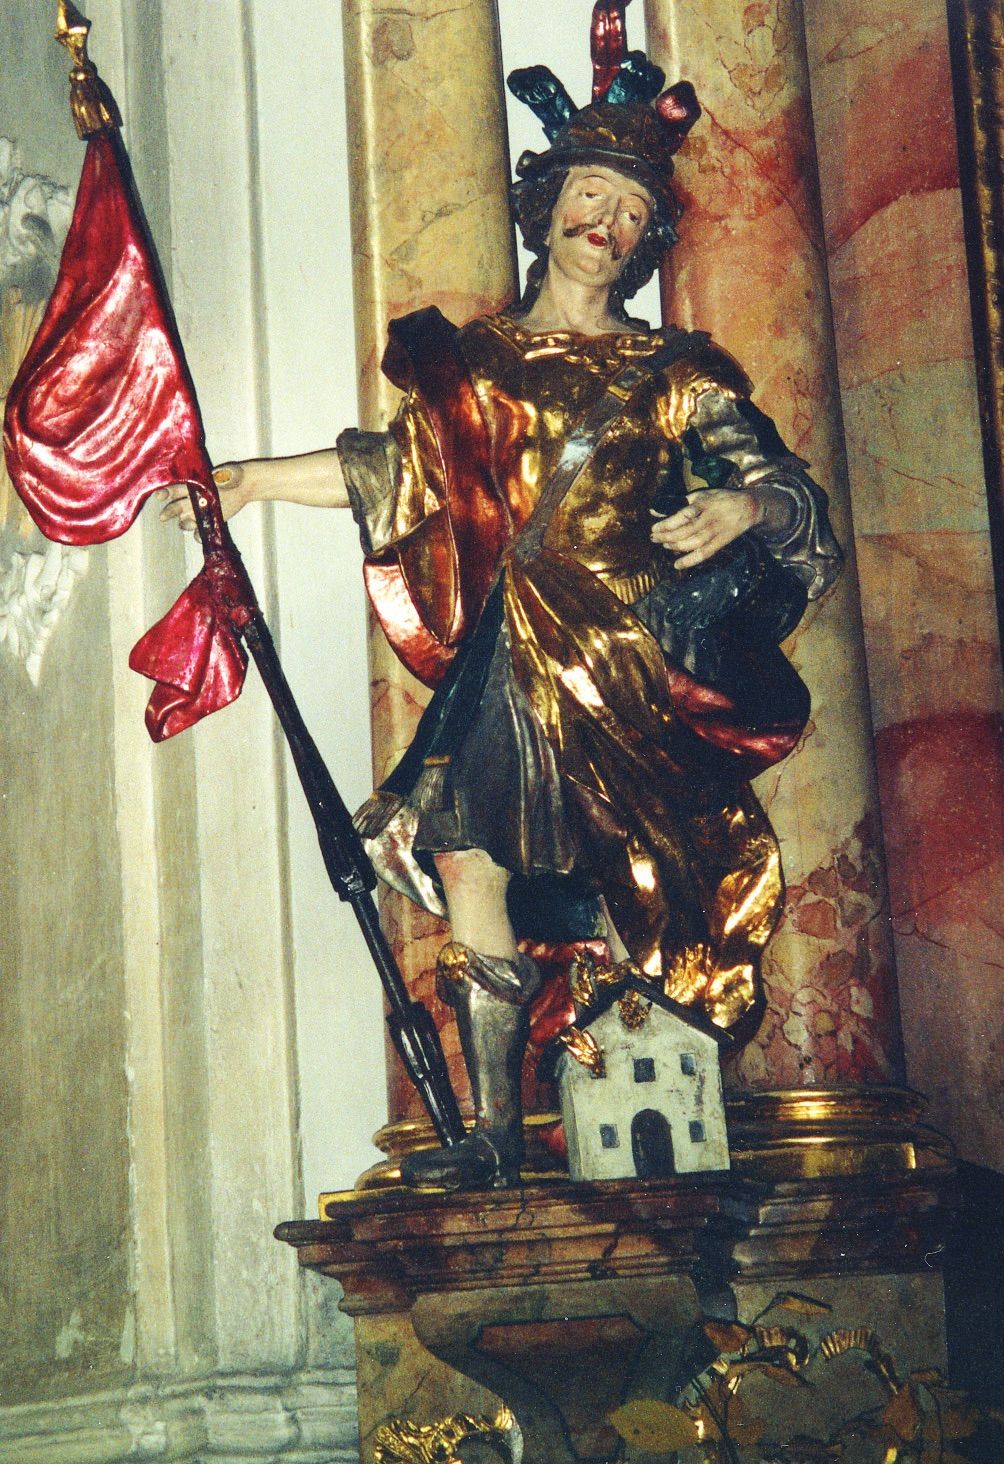 Der Heilige Florian, der himmlische Feuerwehrmann,